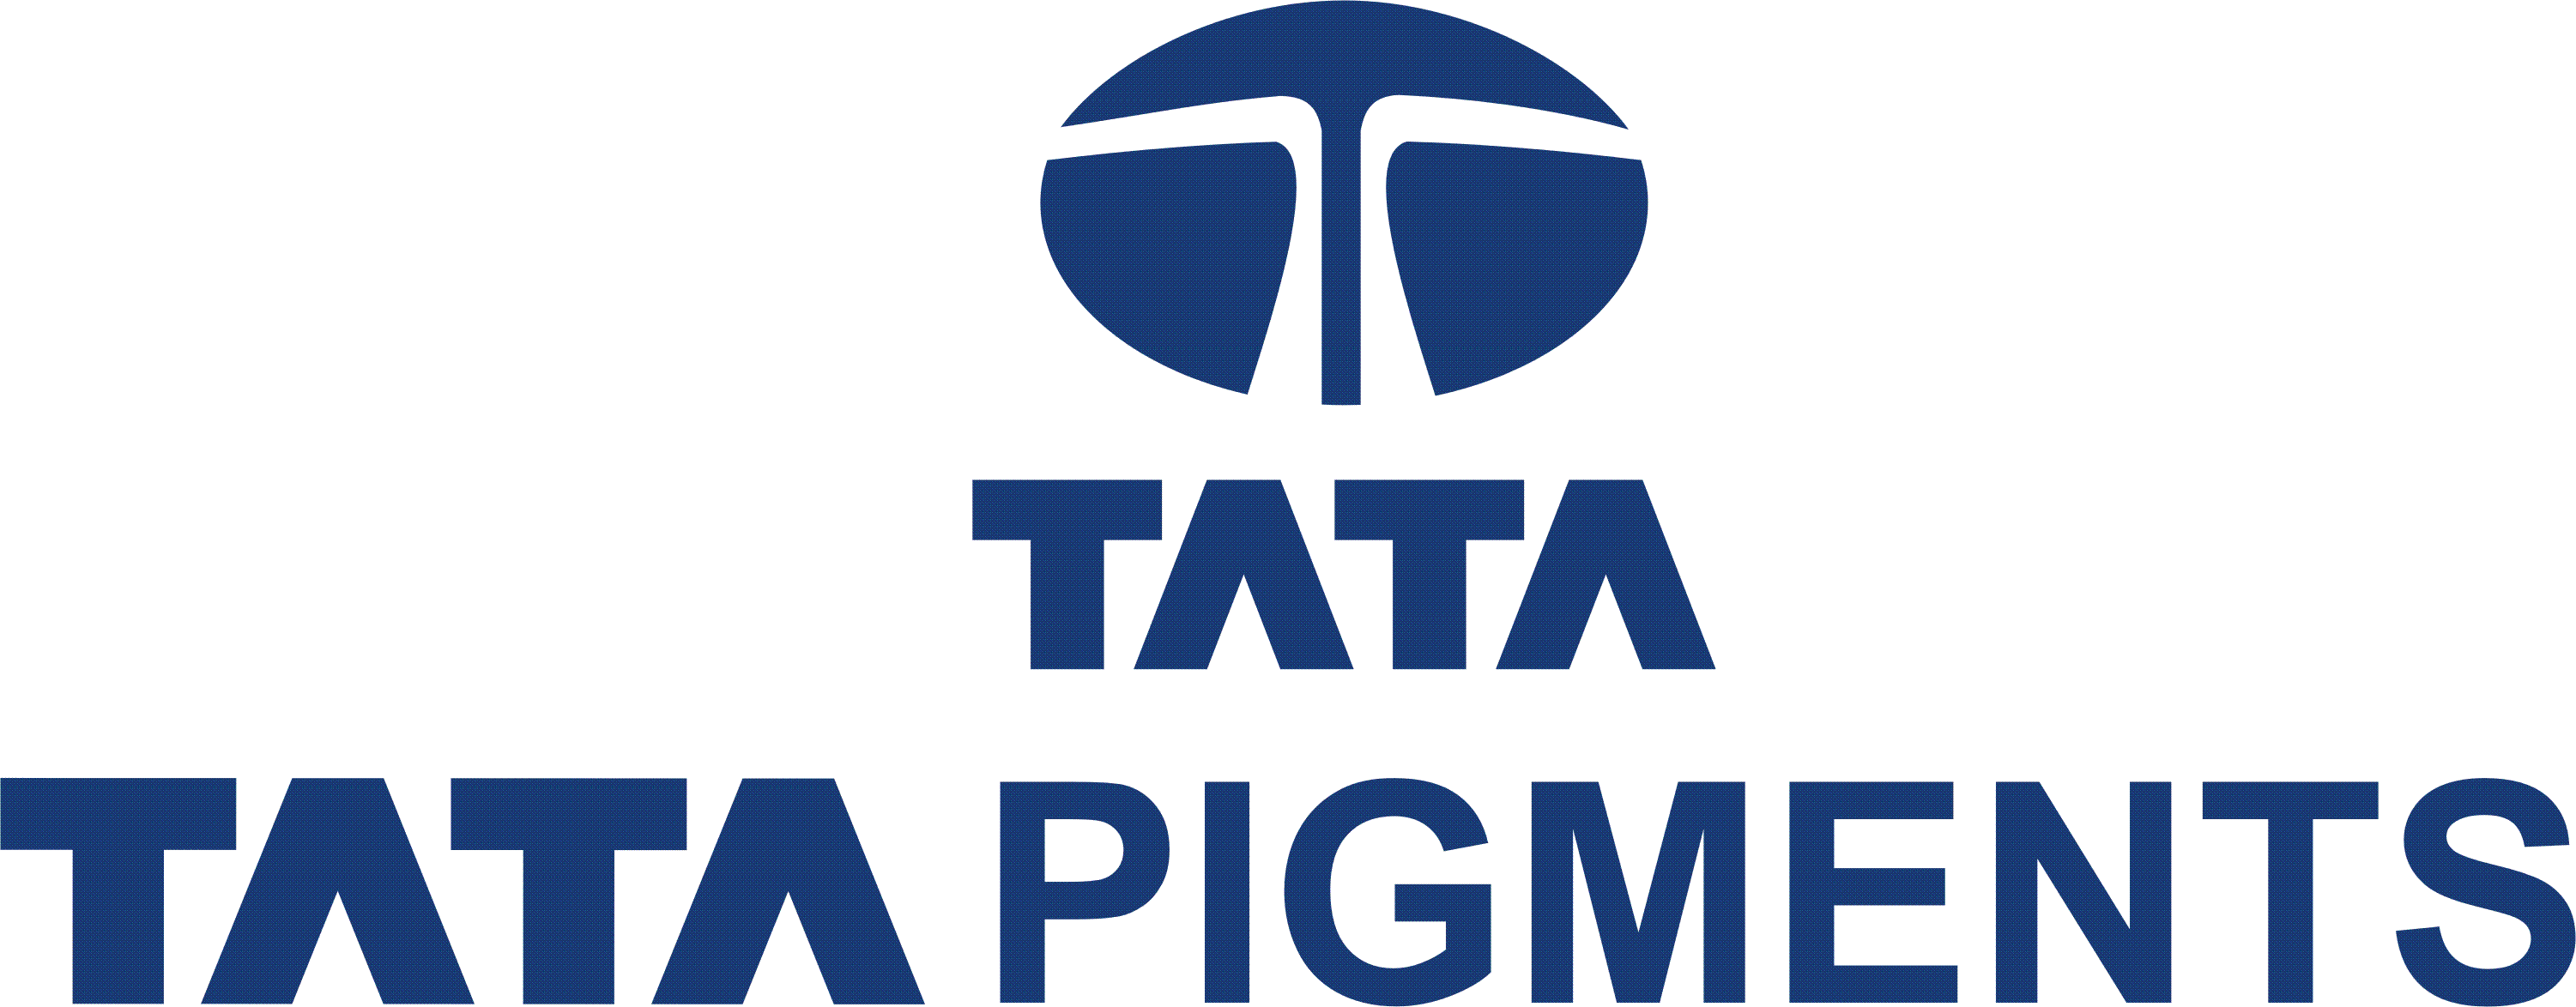 Tata Pigments